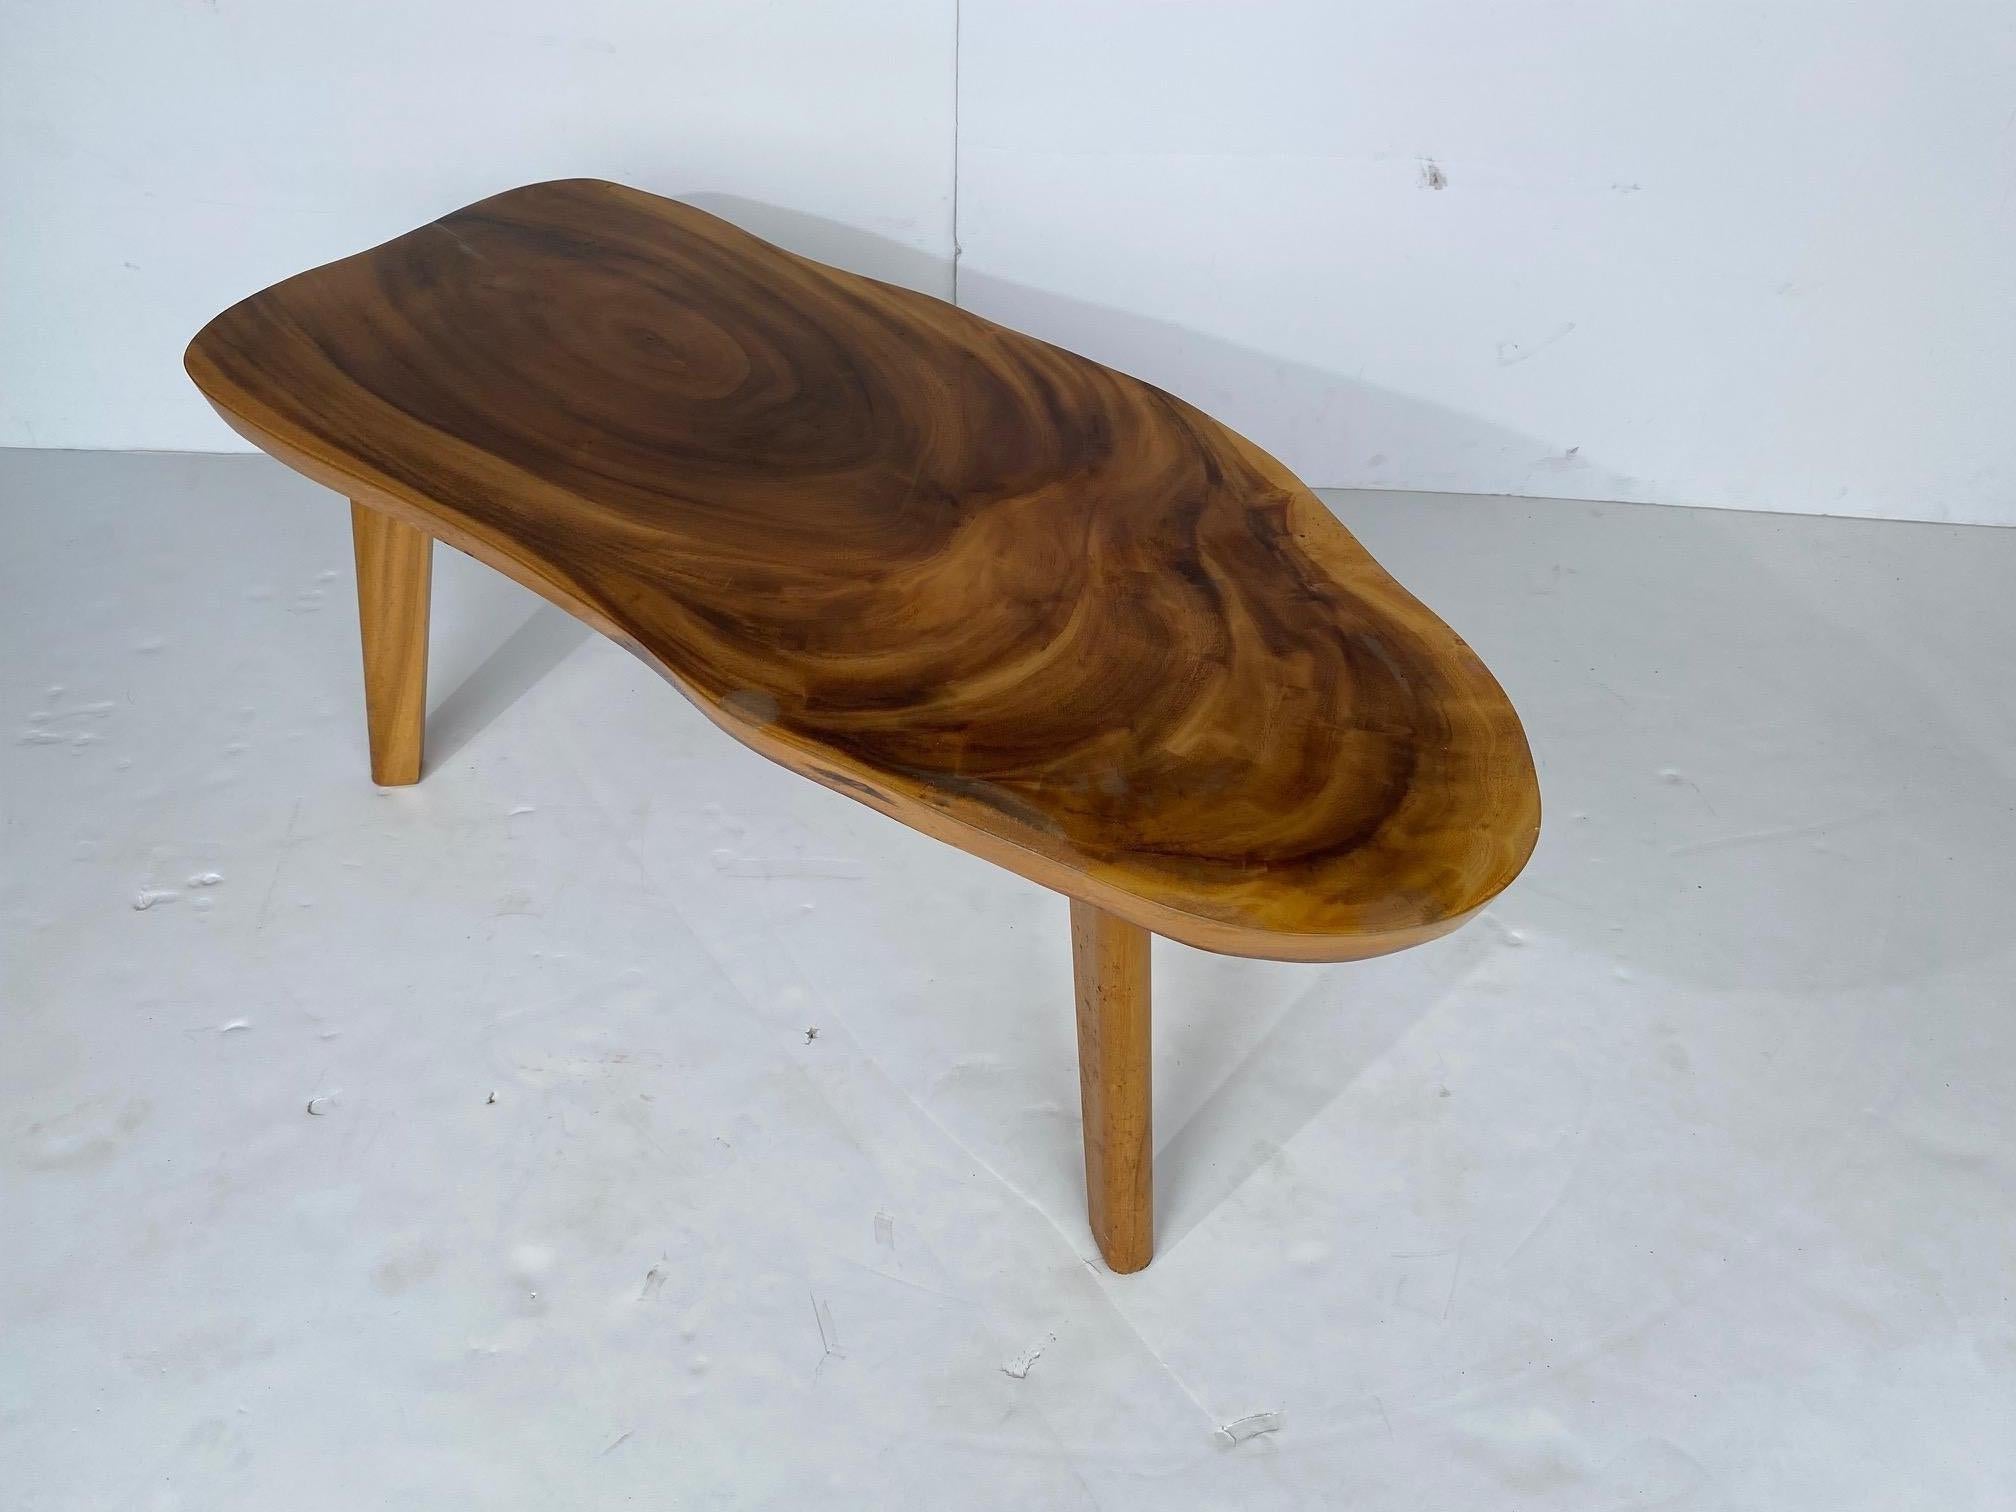 Table basse du milieu du siècle, en bois massif de koa. Cette pièce est solide, robuste et ne présente aucun dommage important.

Il y a quelques minuscules fissures à la racine des cheveux qui se forment naturellement, que vous pouvez probablement